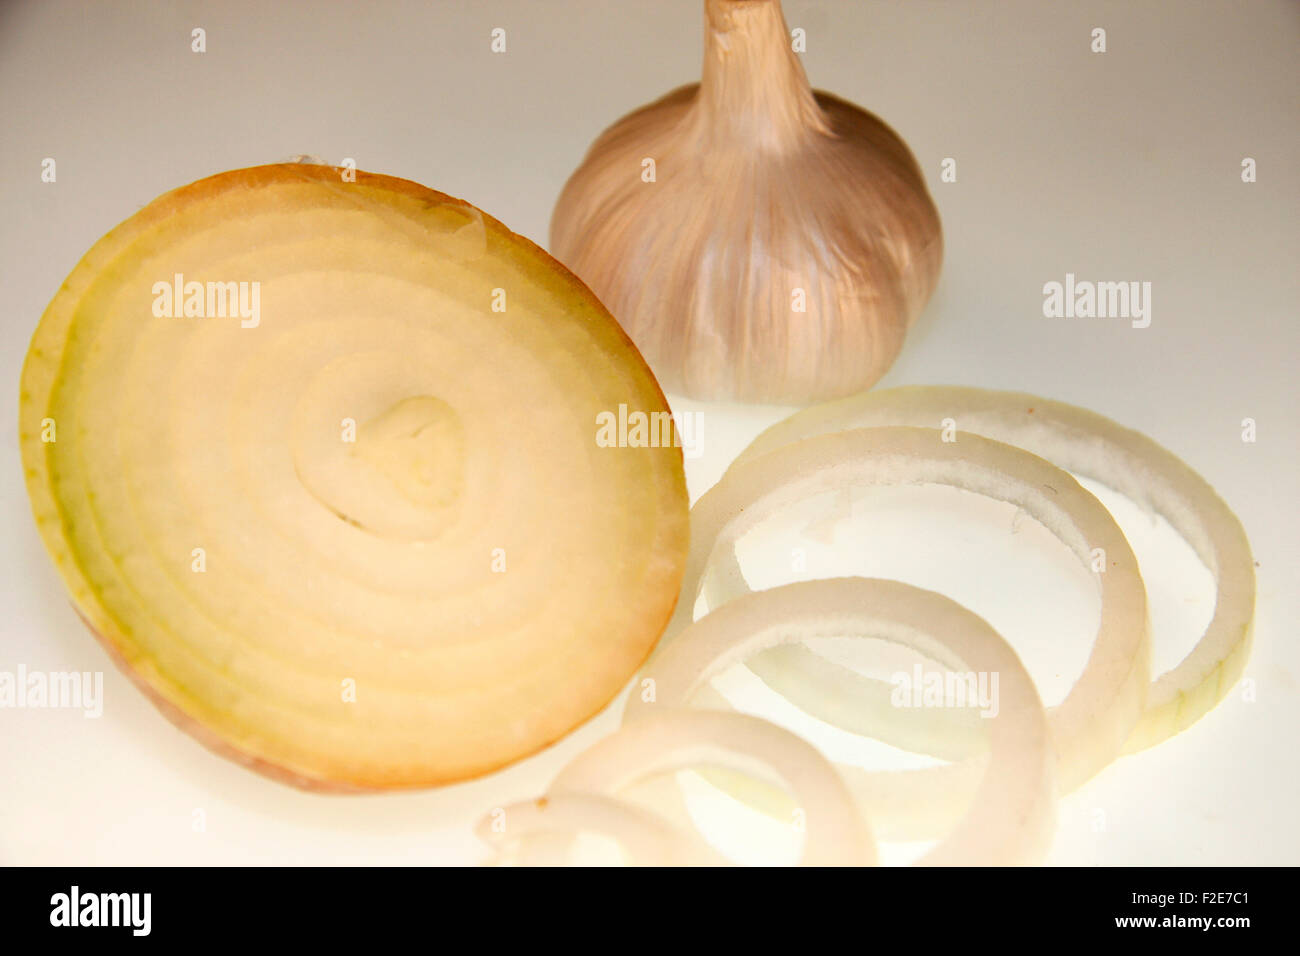 Zwiebel, Knoblauch - Symbolbild Nahrungsmittel. Foto de stock